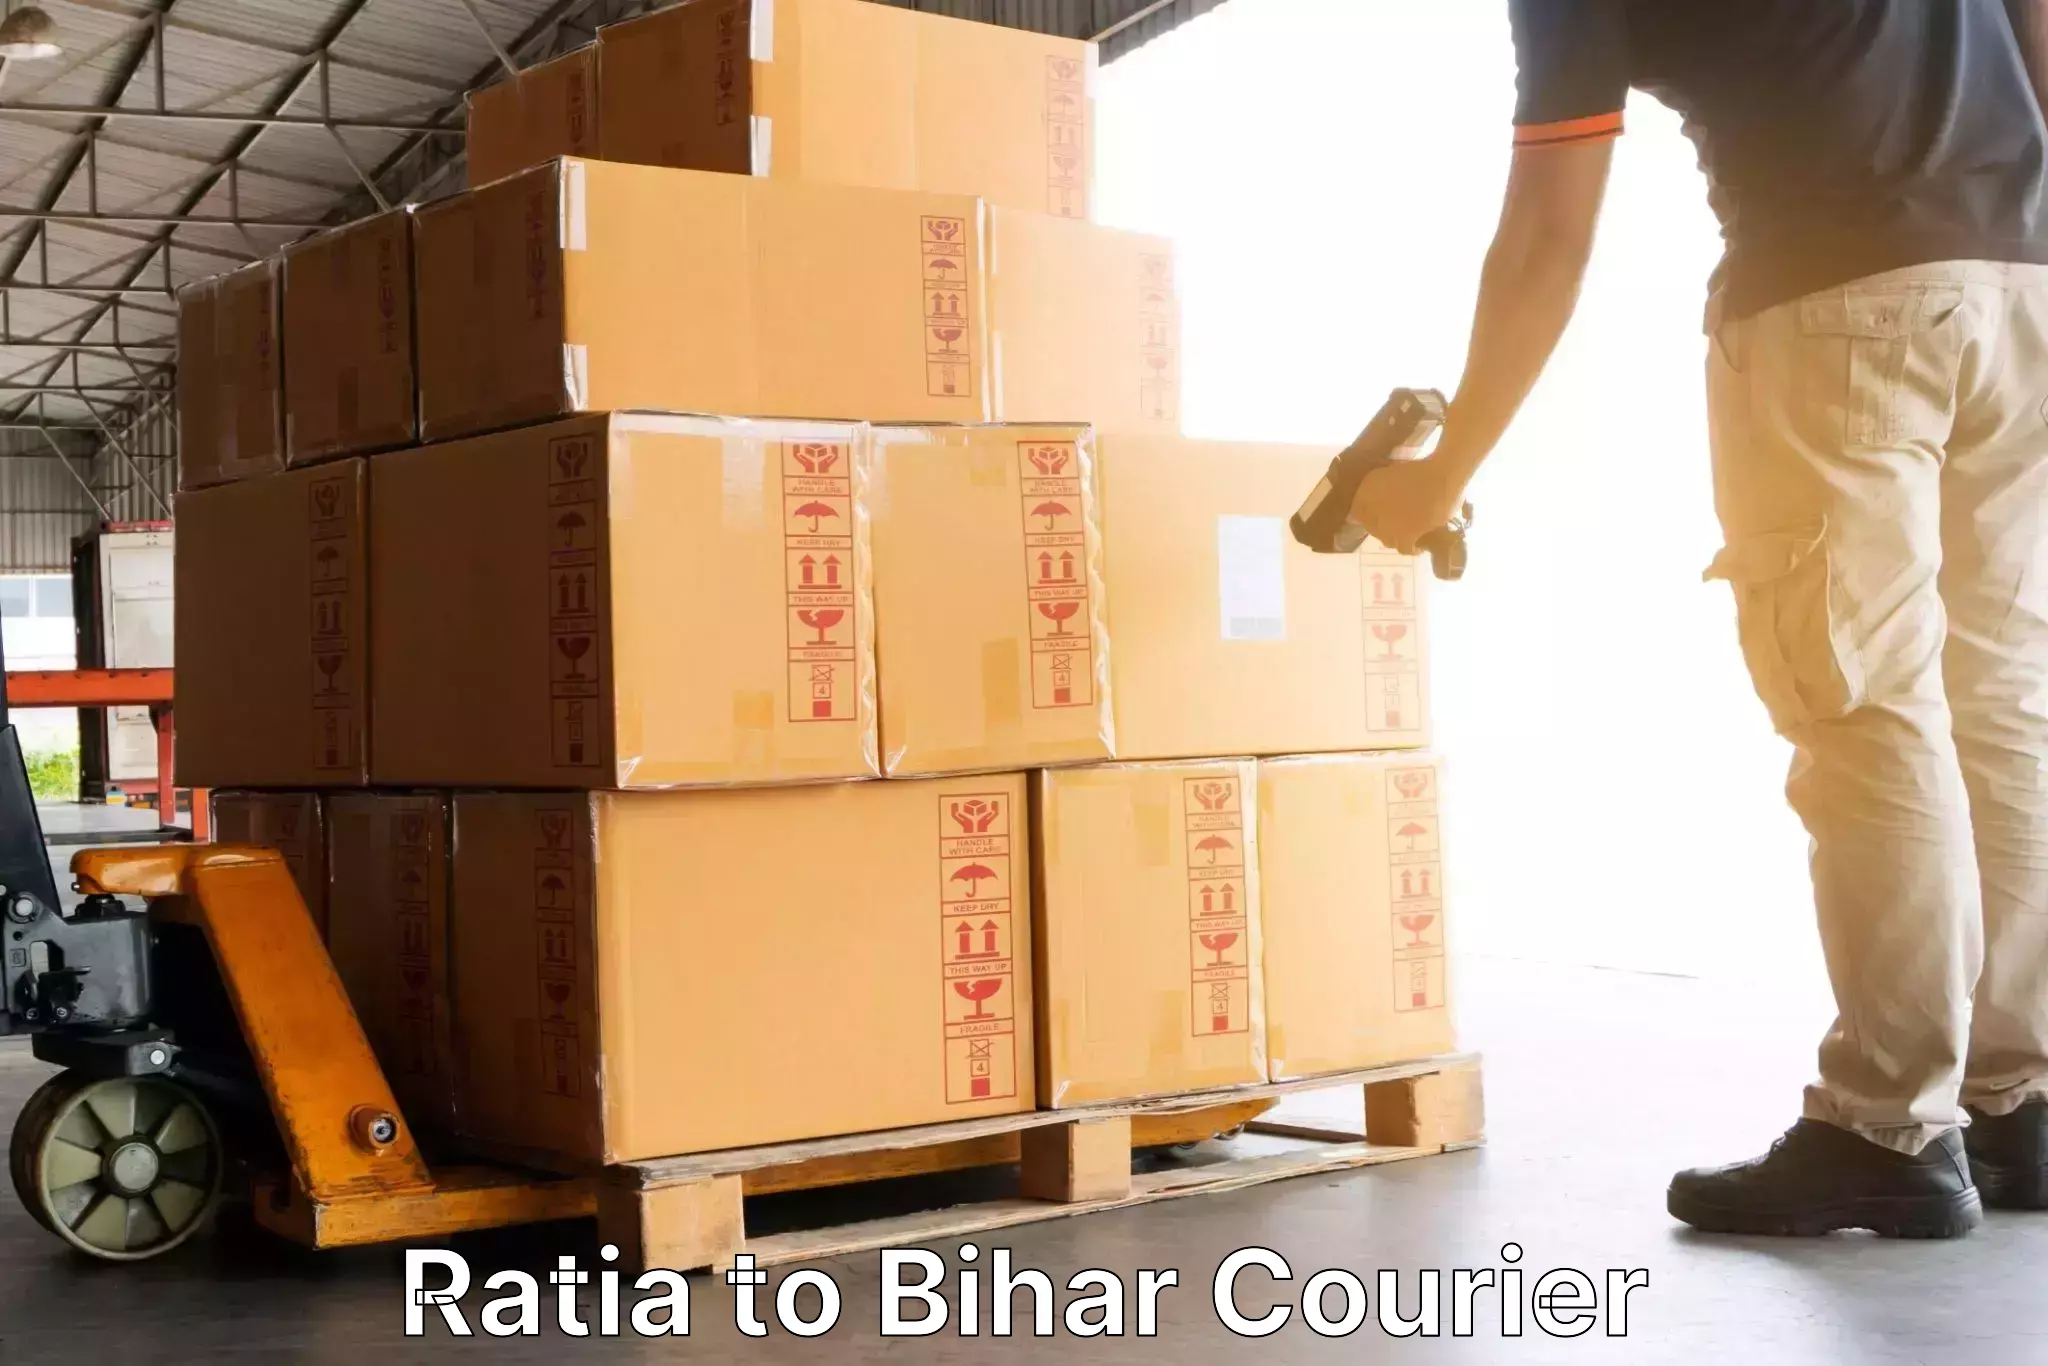 International courier rates Ratia to Saran